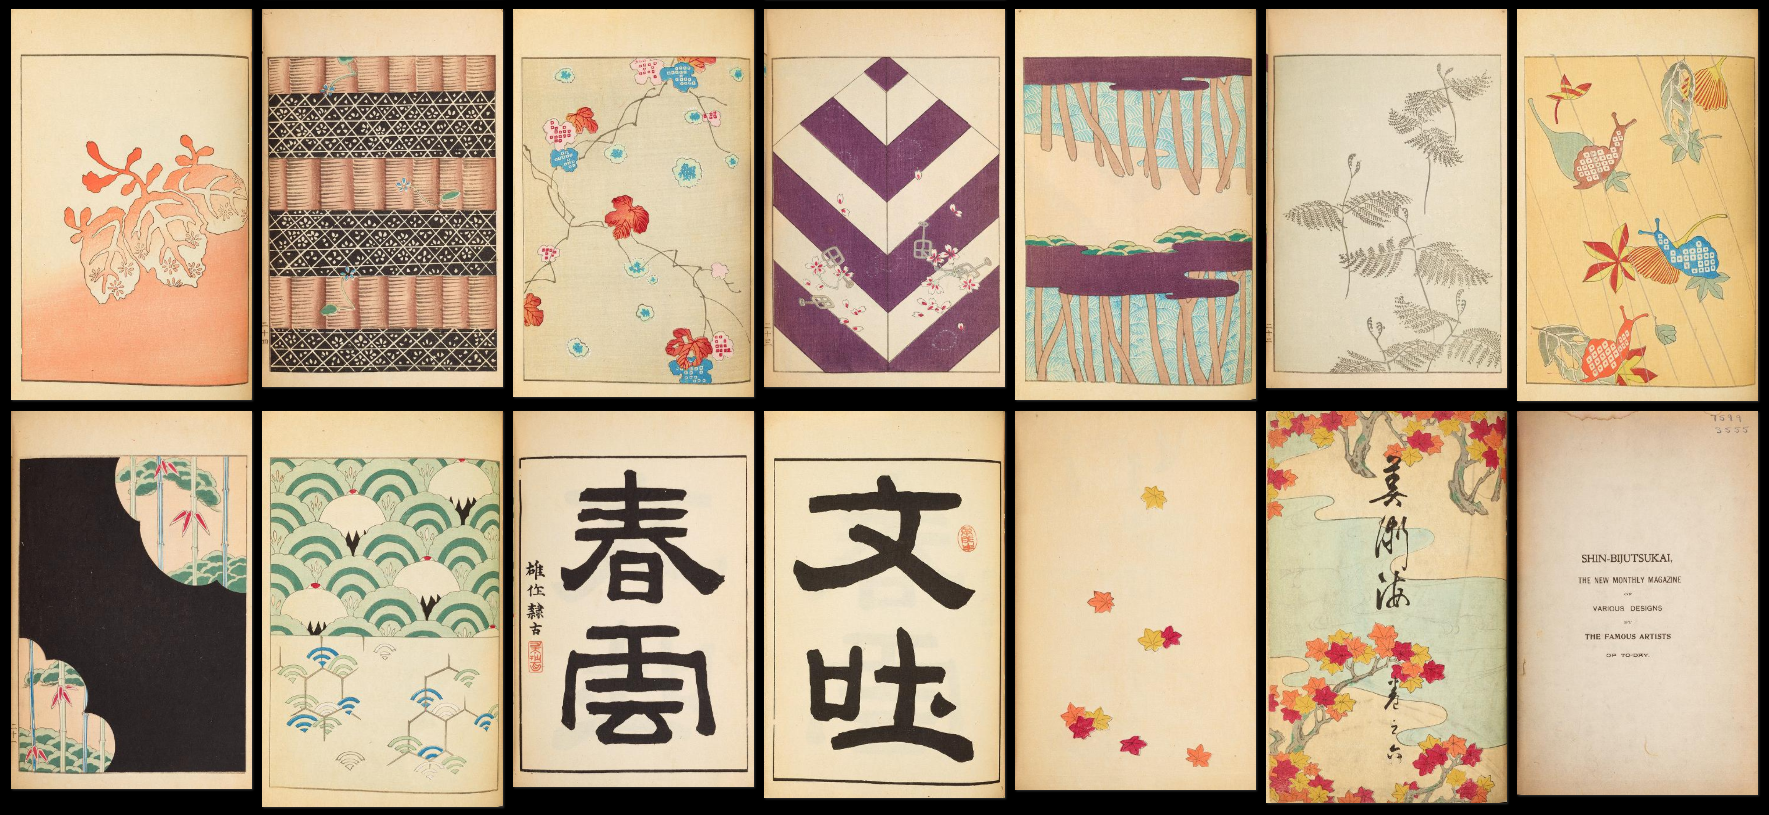 39 numéros d’un magazine d’art japonais du 19ème siècle, en haute résolution